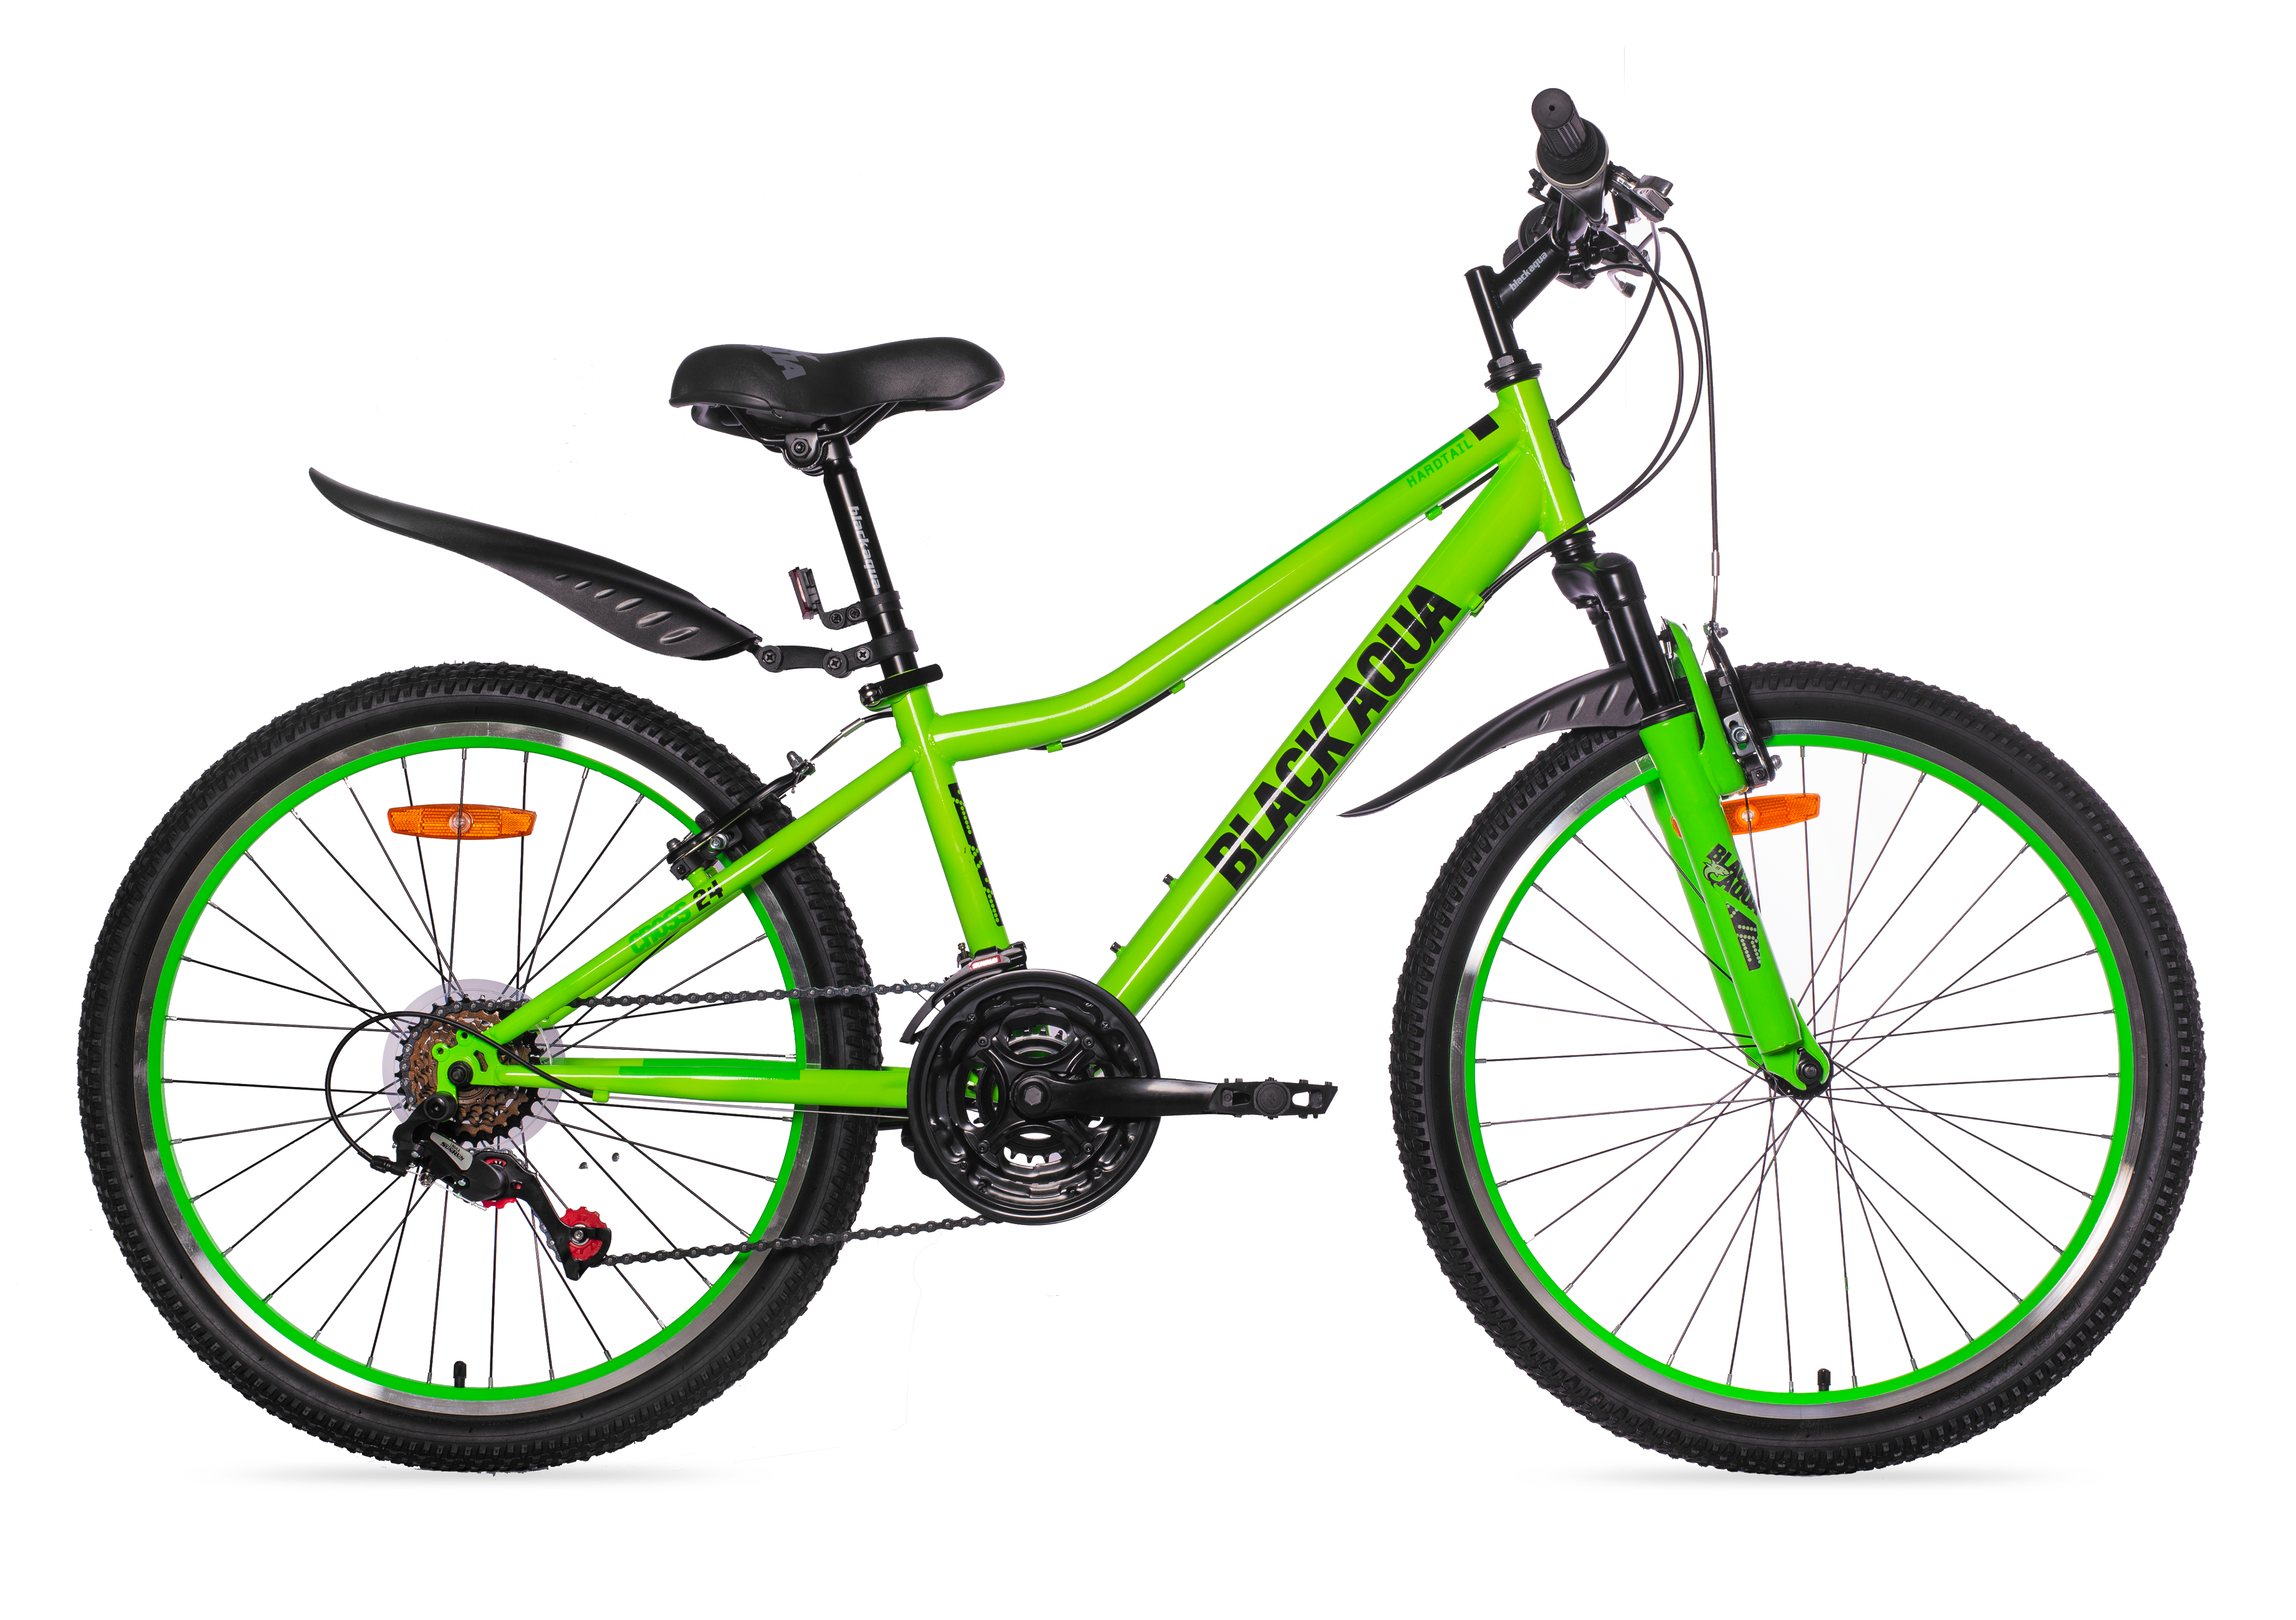 Скоростные велосипеды 18 скоростей. Велосипед Black Aqua Cross 1431 v 24. Велосипед Black Aqua 20. Велосипед Black Aqua Cross 1201 v 20 зеленый. Велосипед Black Aqua 24.